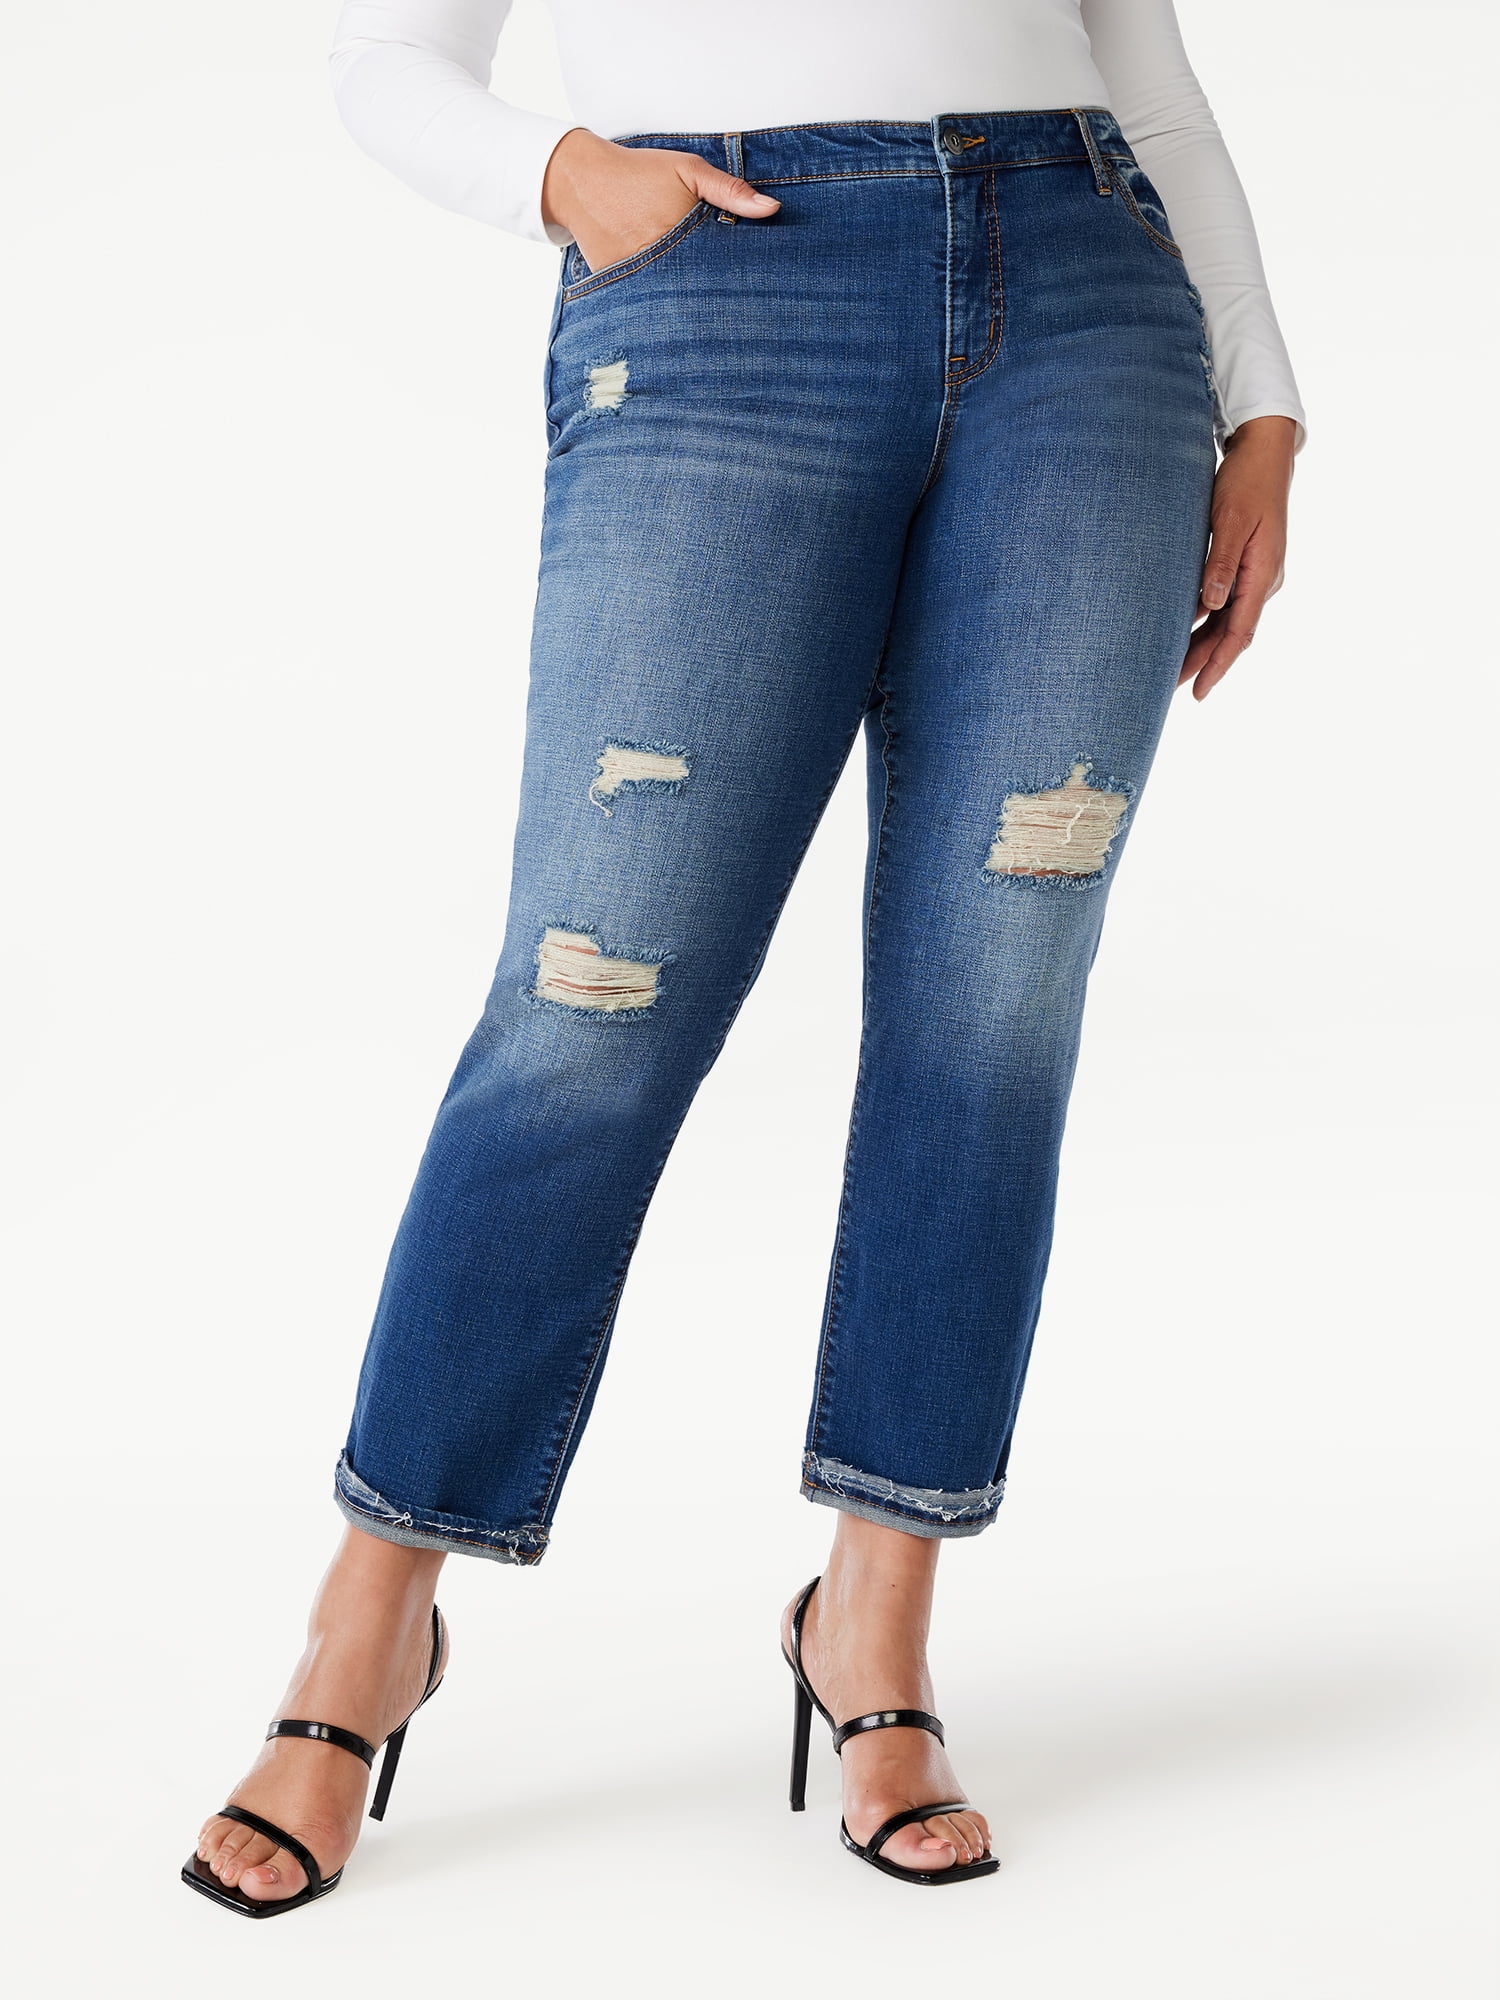 Sofia Jeans Women's Plus Size Bagi Boyfriend Mid Rise Distressed Hem Jeans,  26 Inseam, Sizes 14W-28W